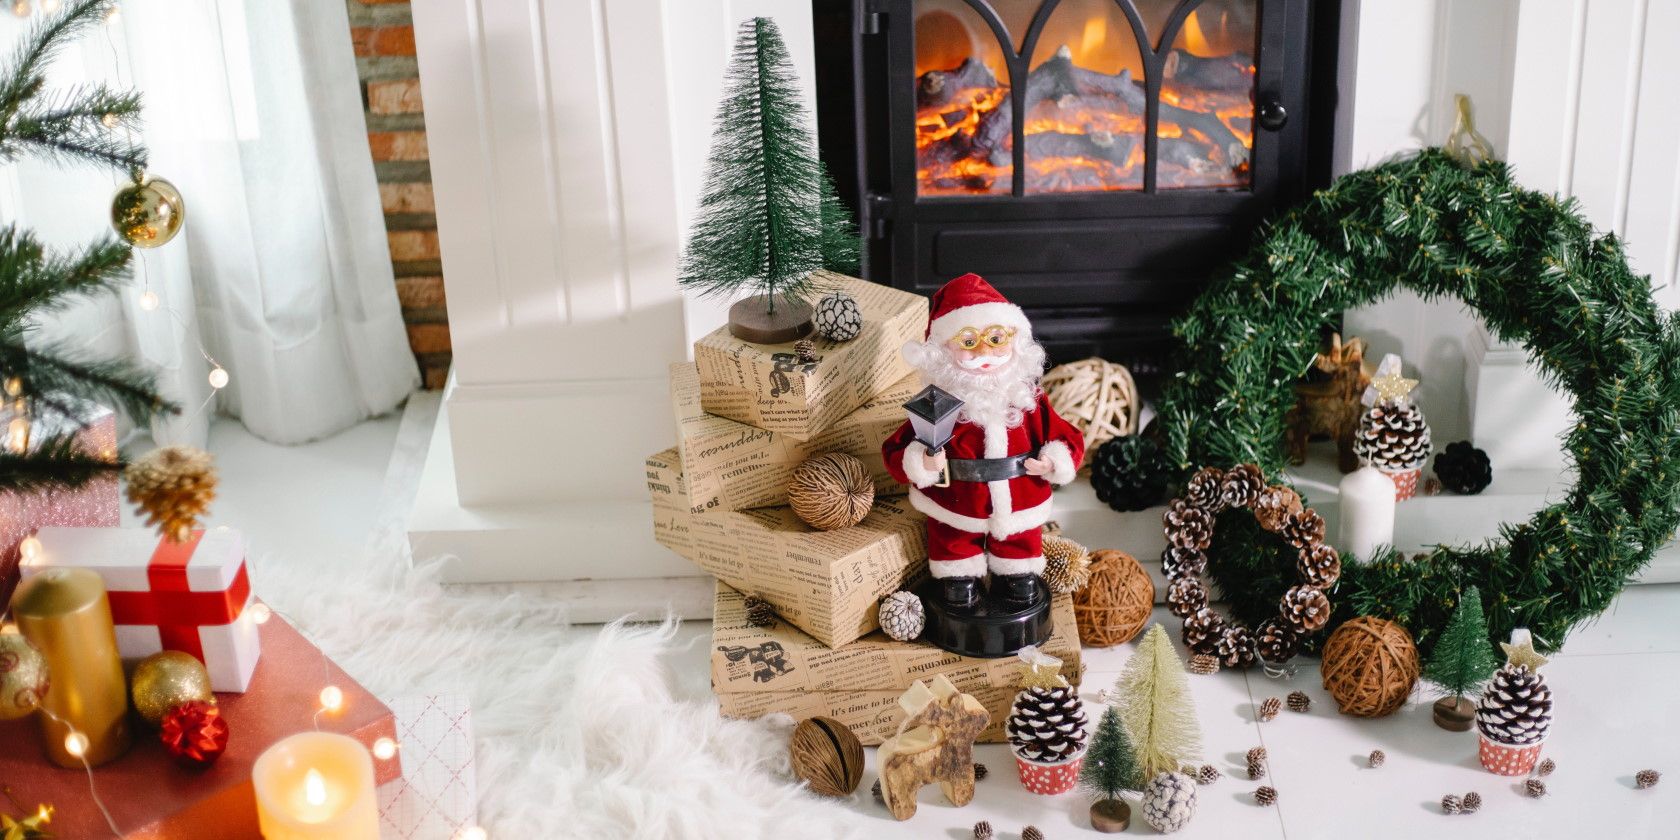 Décorations de Noël et jouets installés devant une cheminée allumée